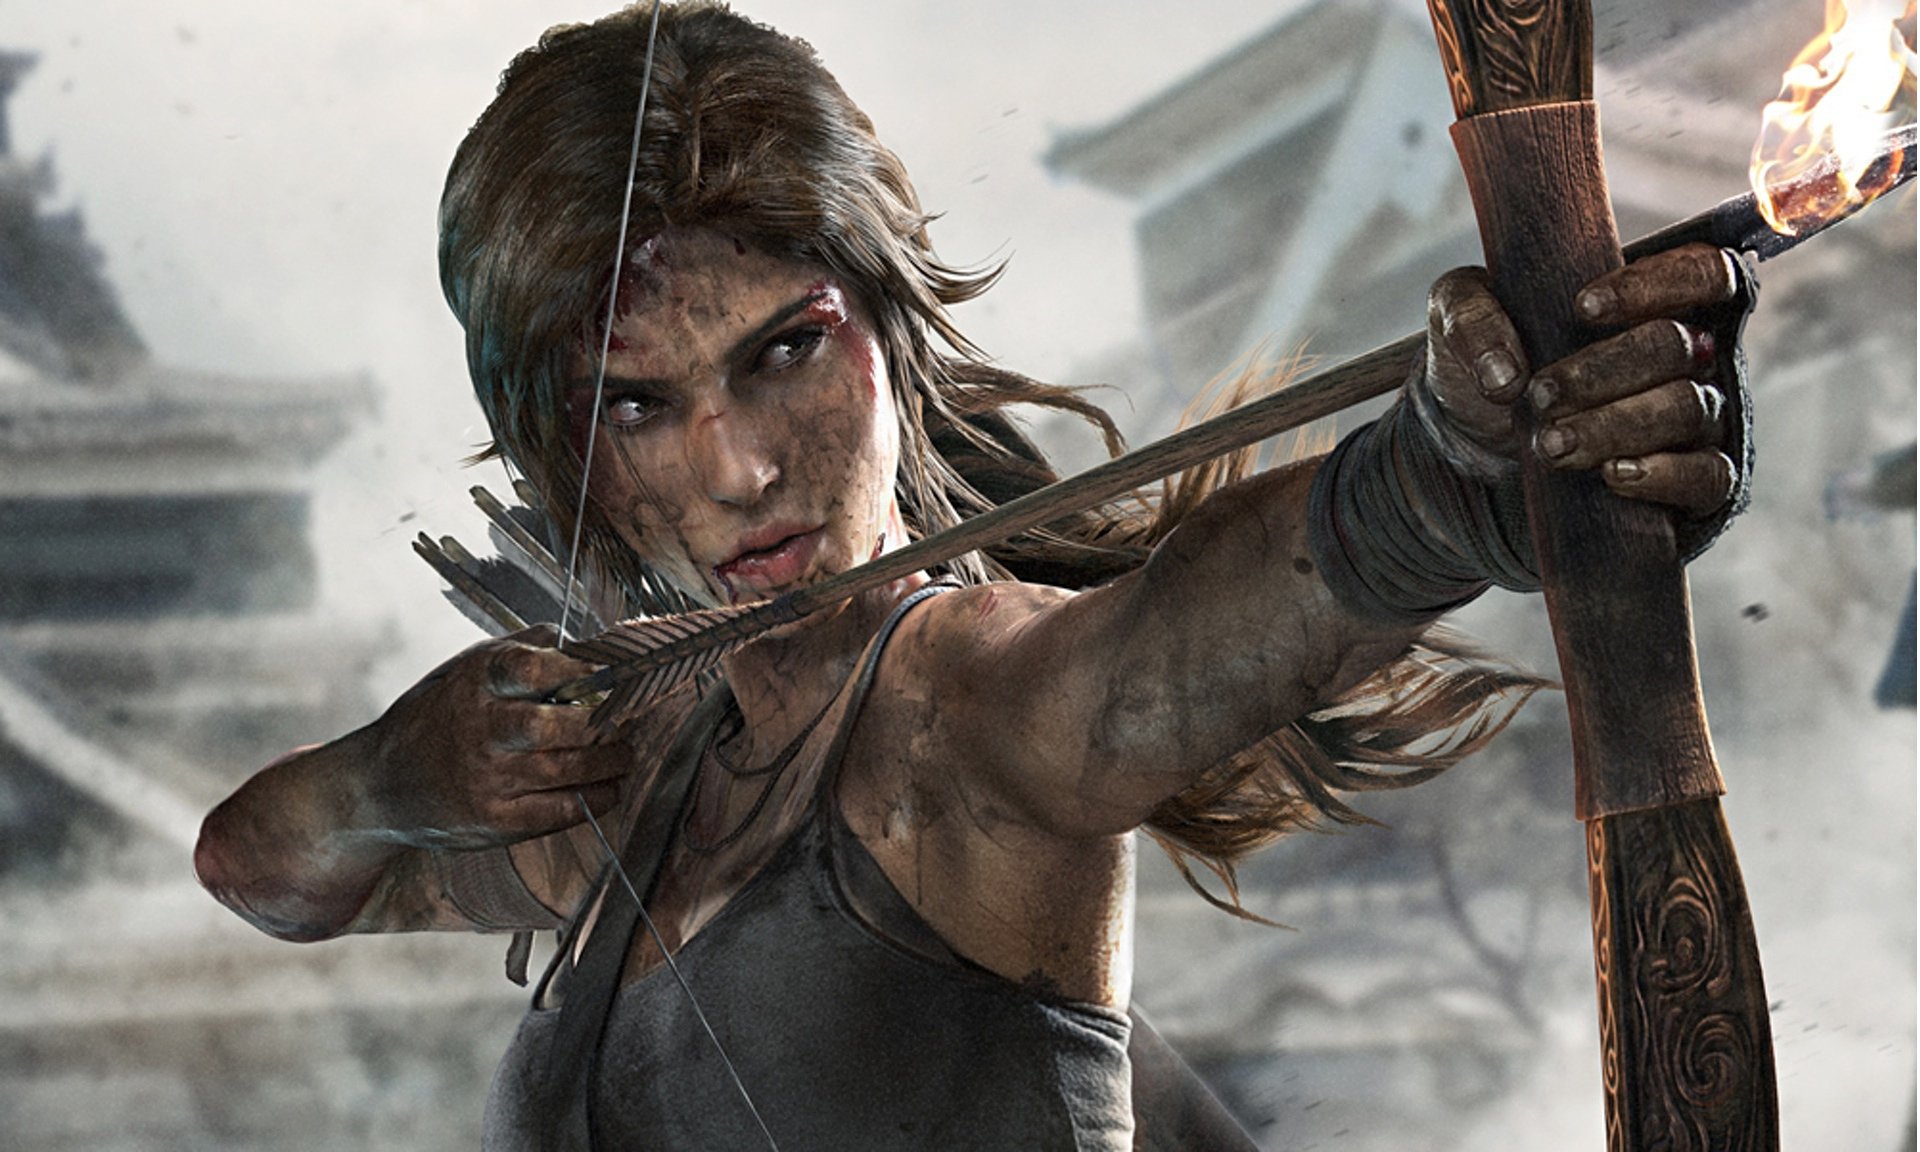 A Lara Croft do reboot de 2013 é mais humana tanto nas suas motivações como na aparência